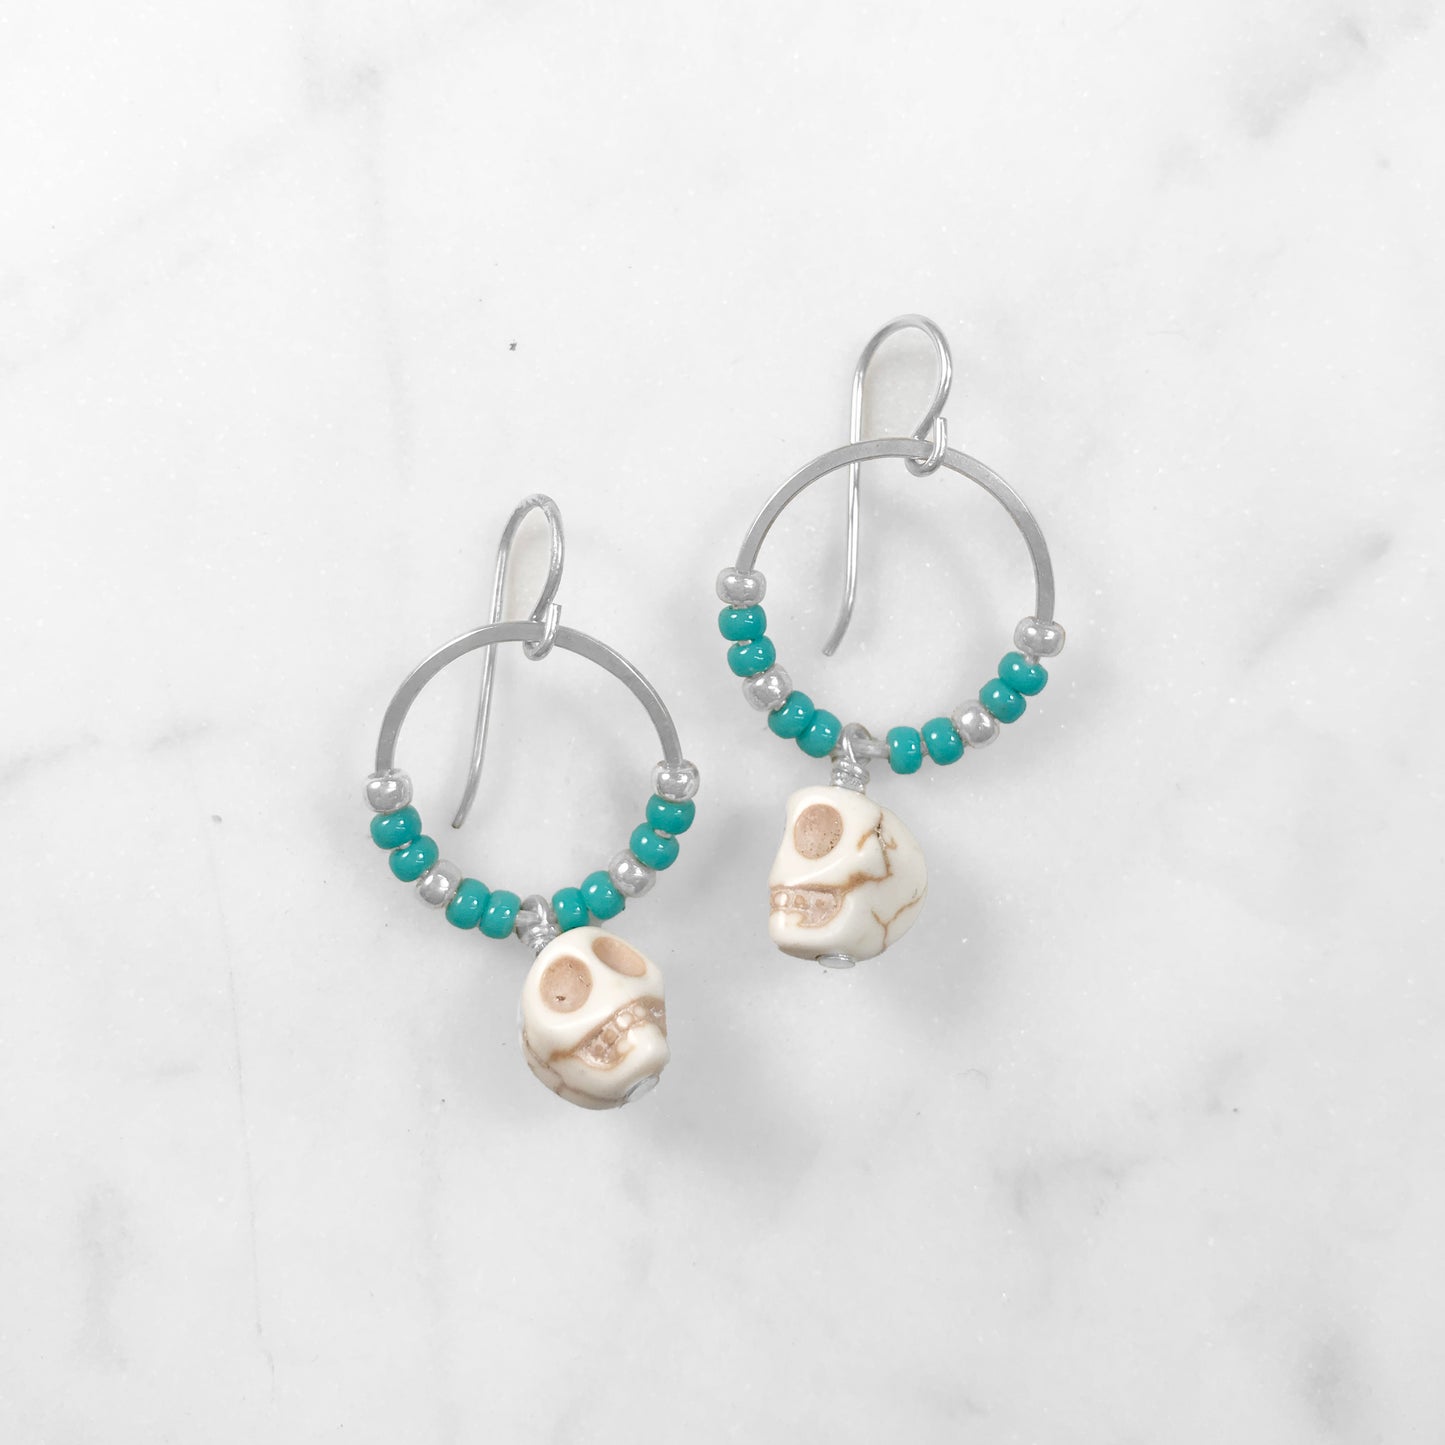 Turquoise & white skull earrings